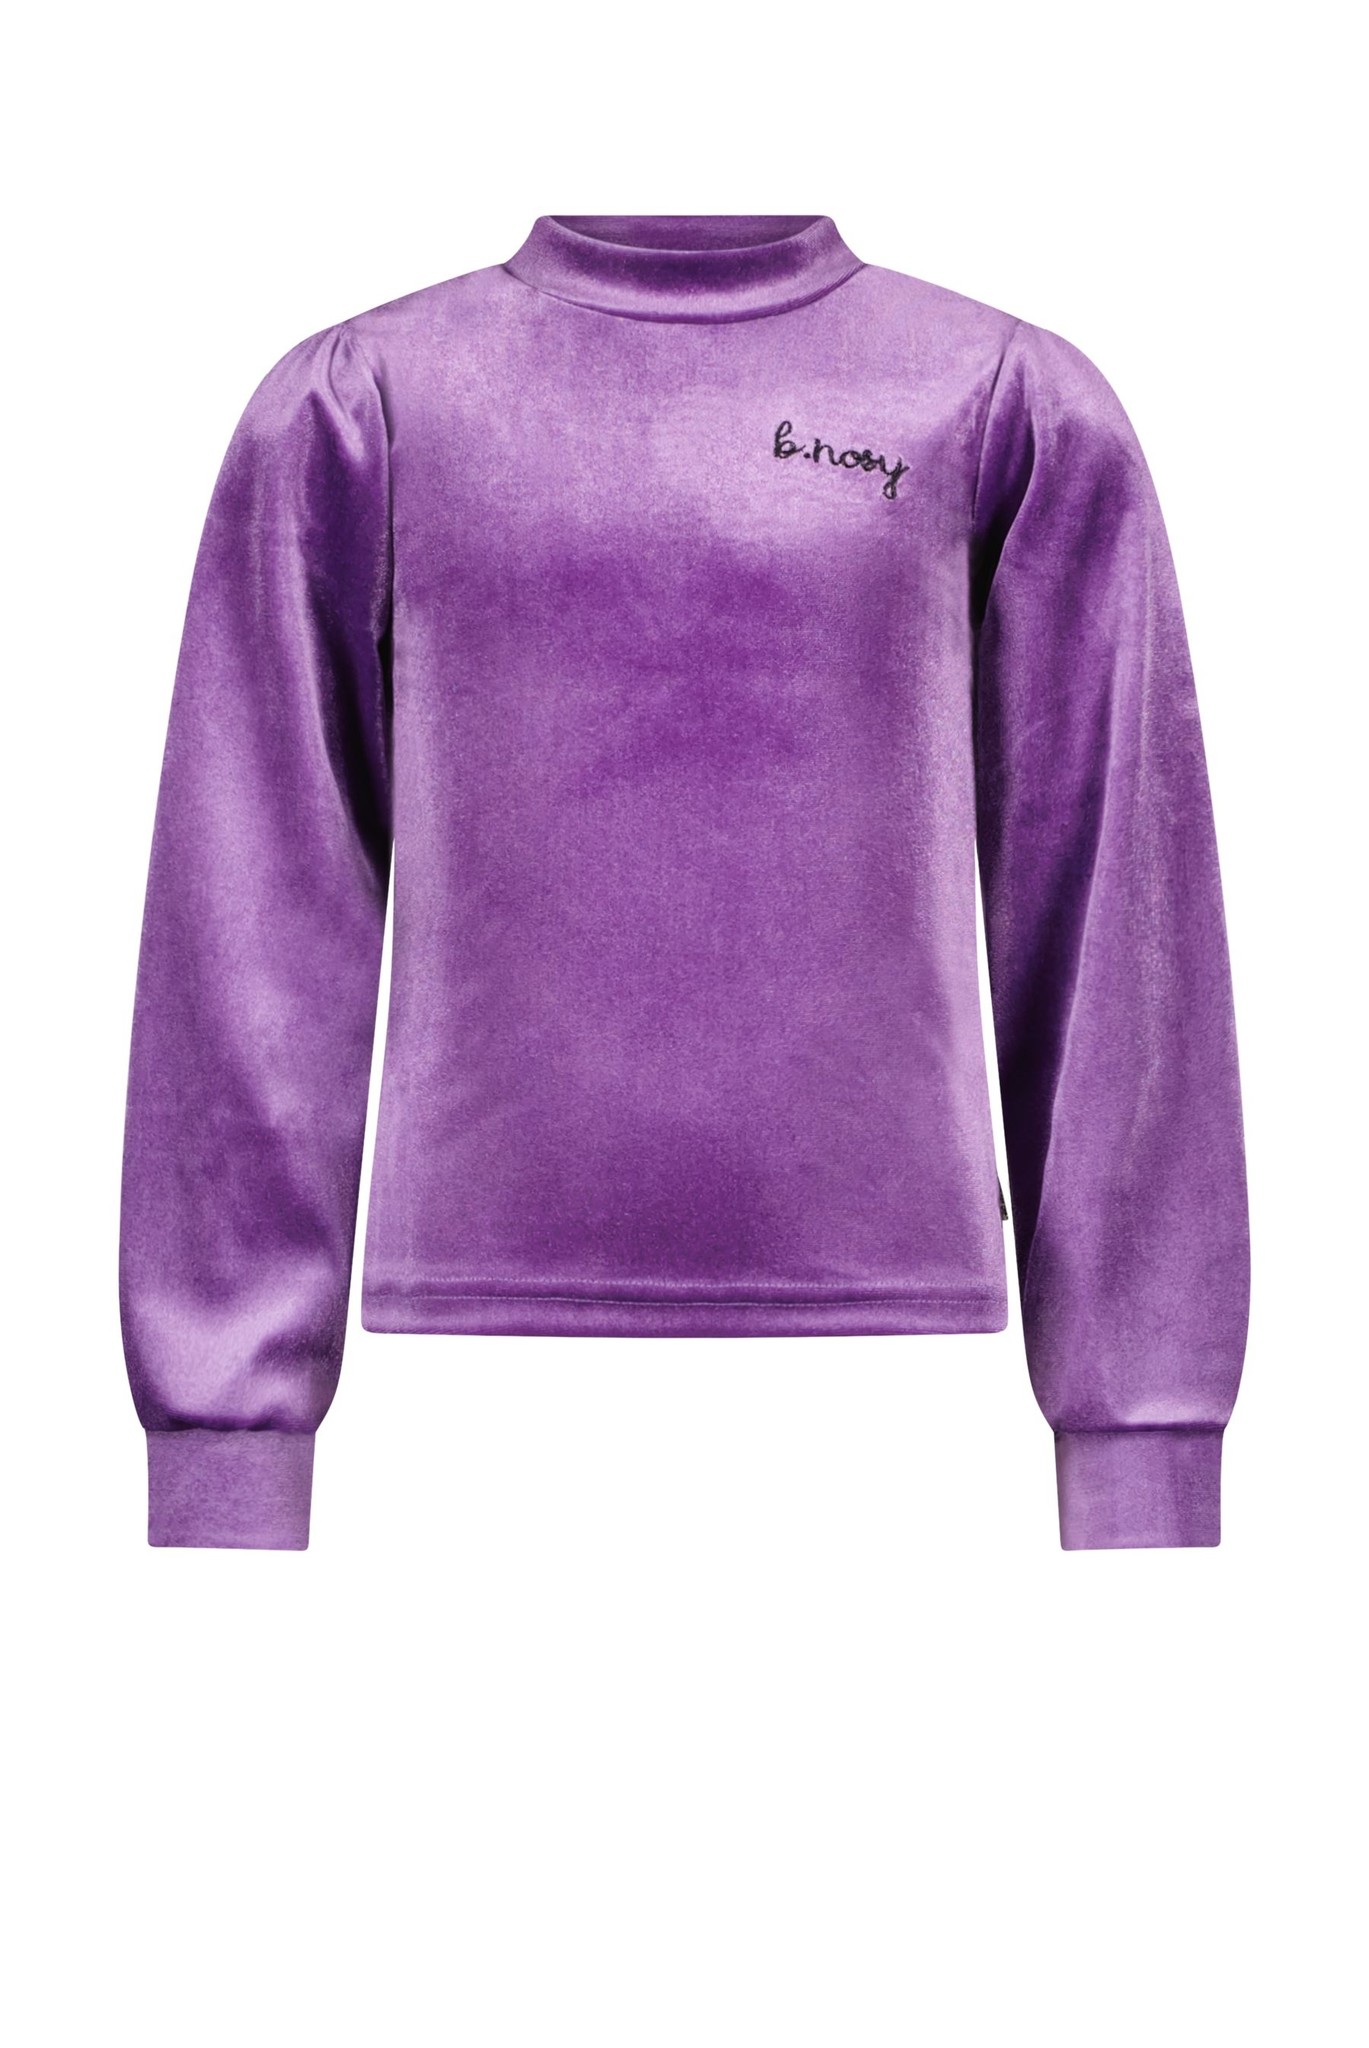 B.Nosy - Meisjes shirt - Purple - Maat 116